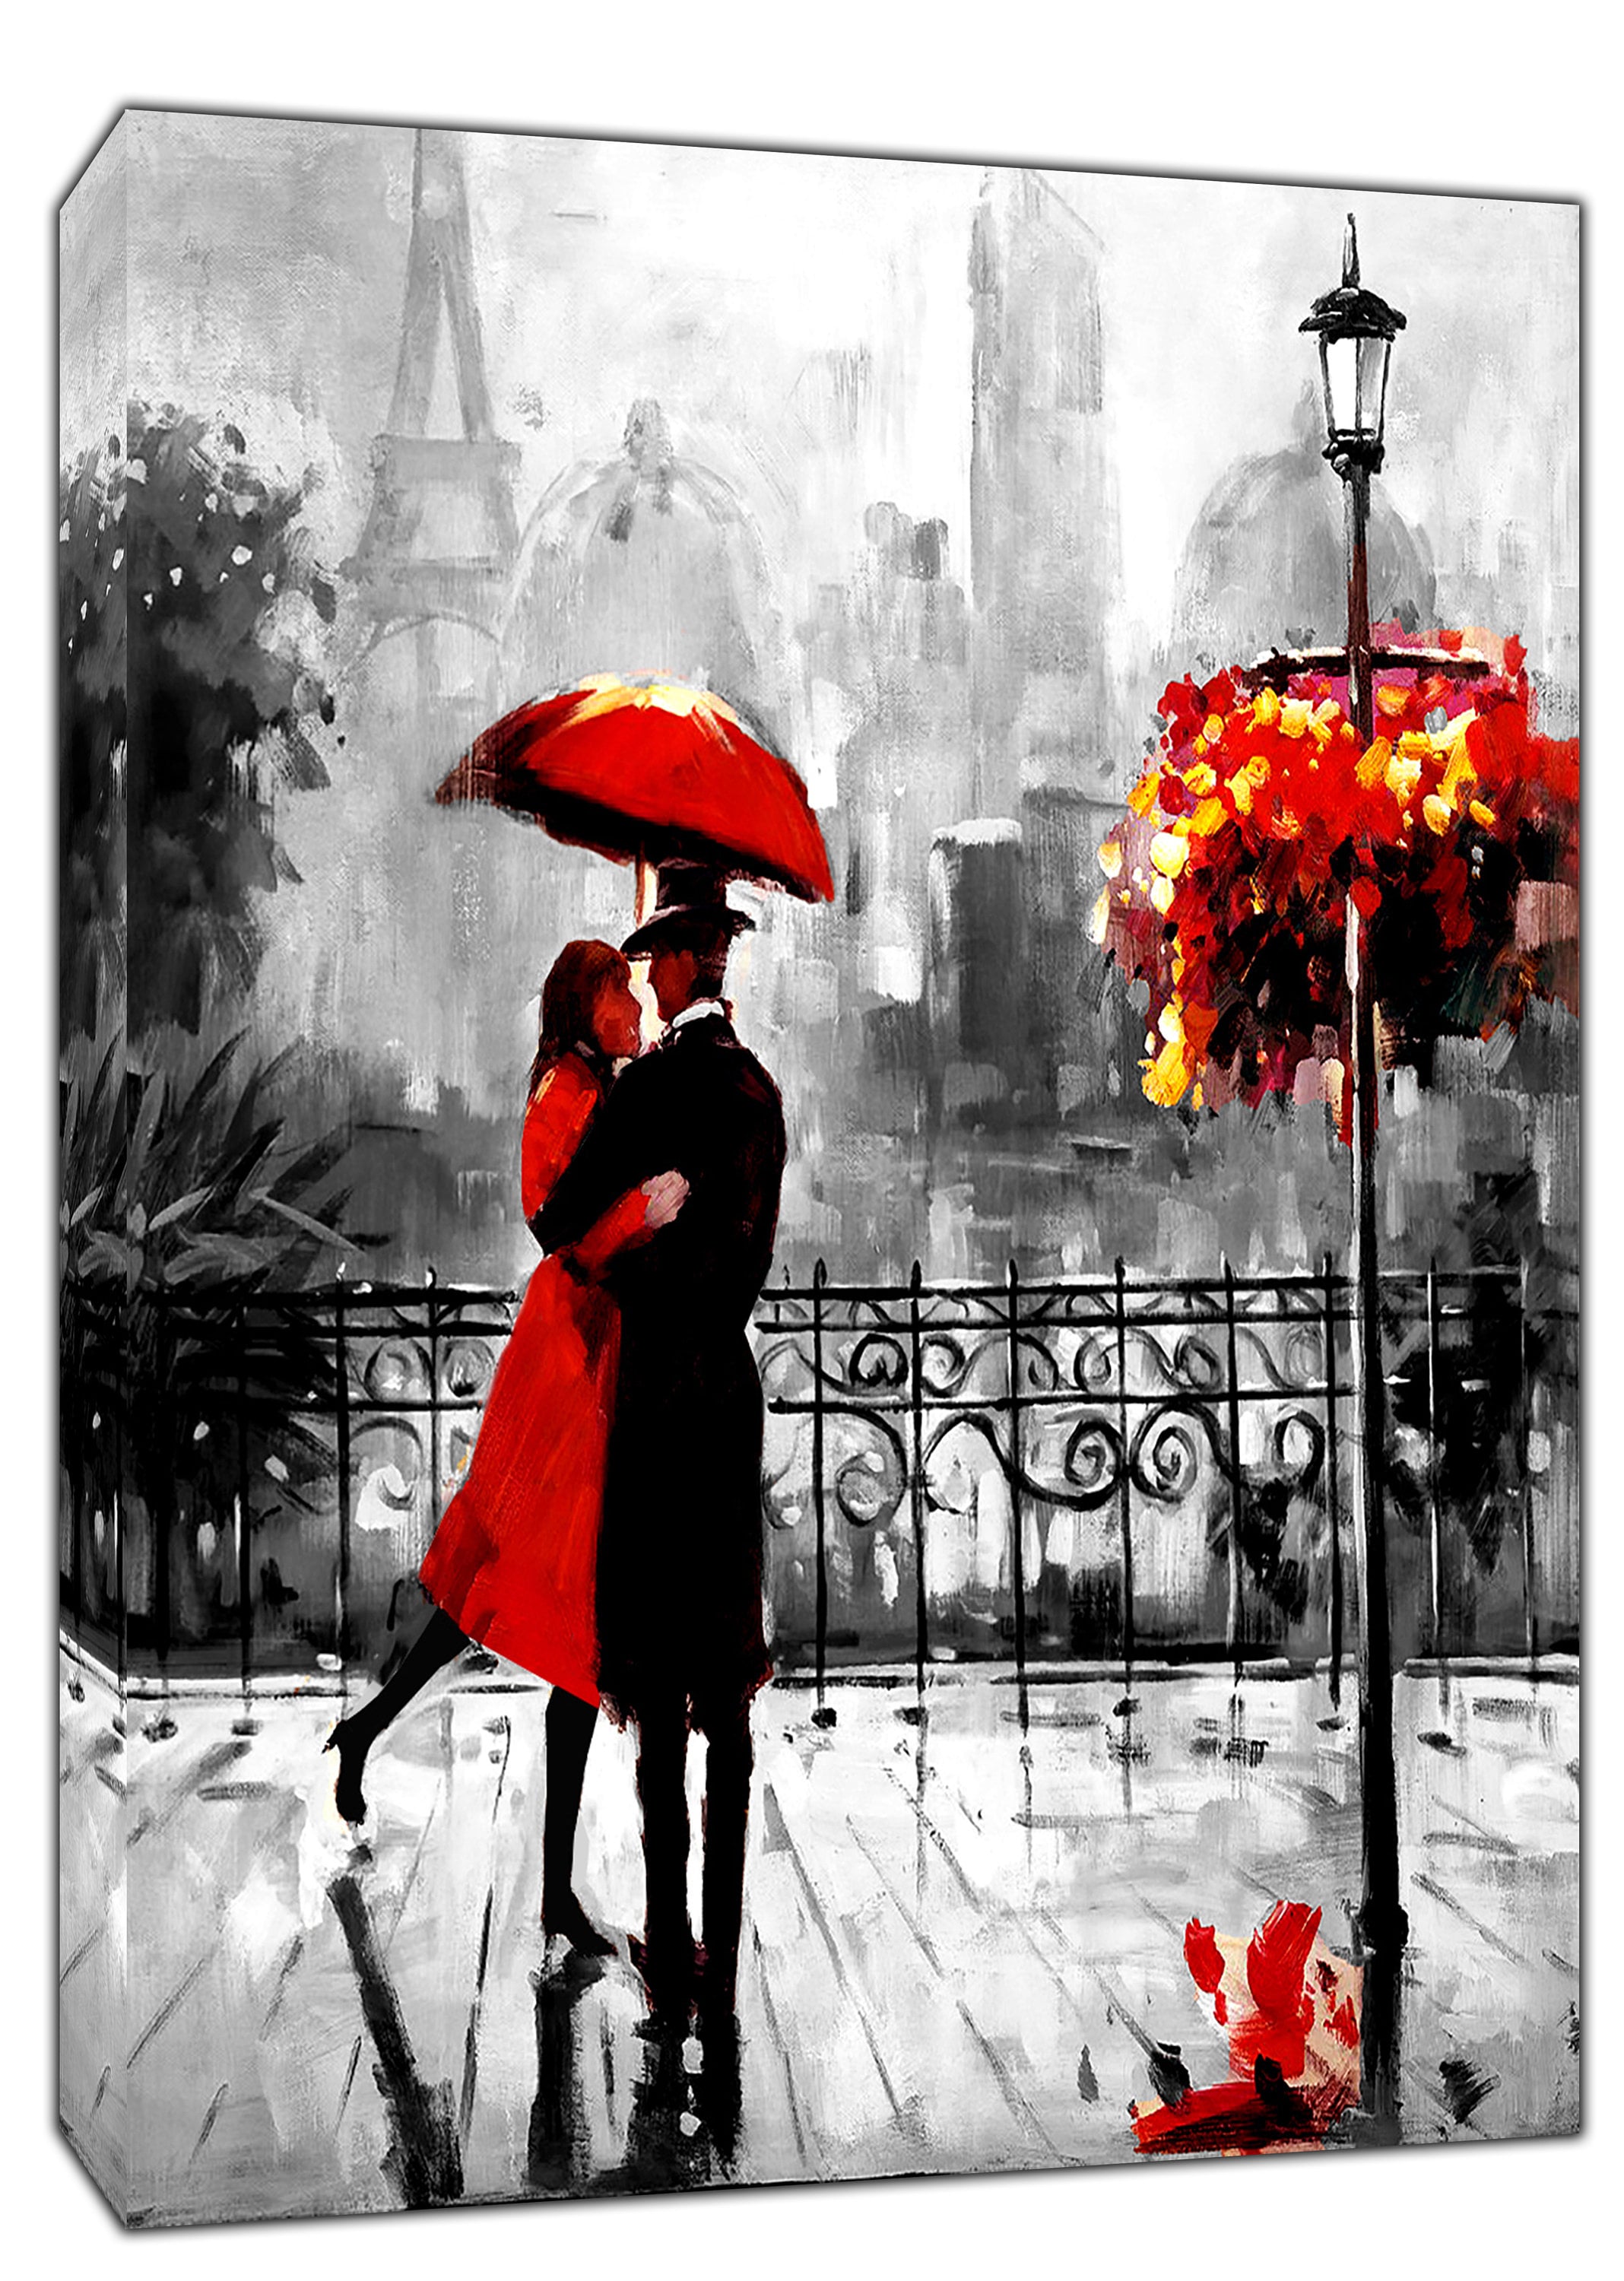 Portrait de couple s'embrassant plein de diamants, parapluie rouge